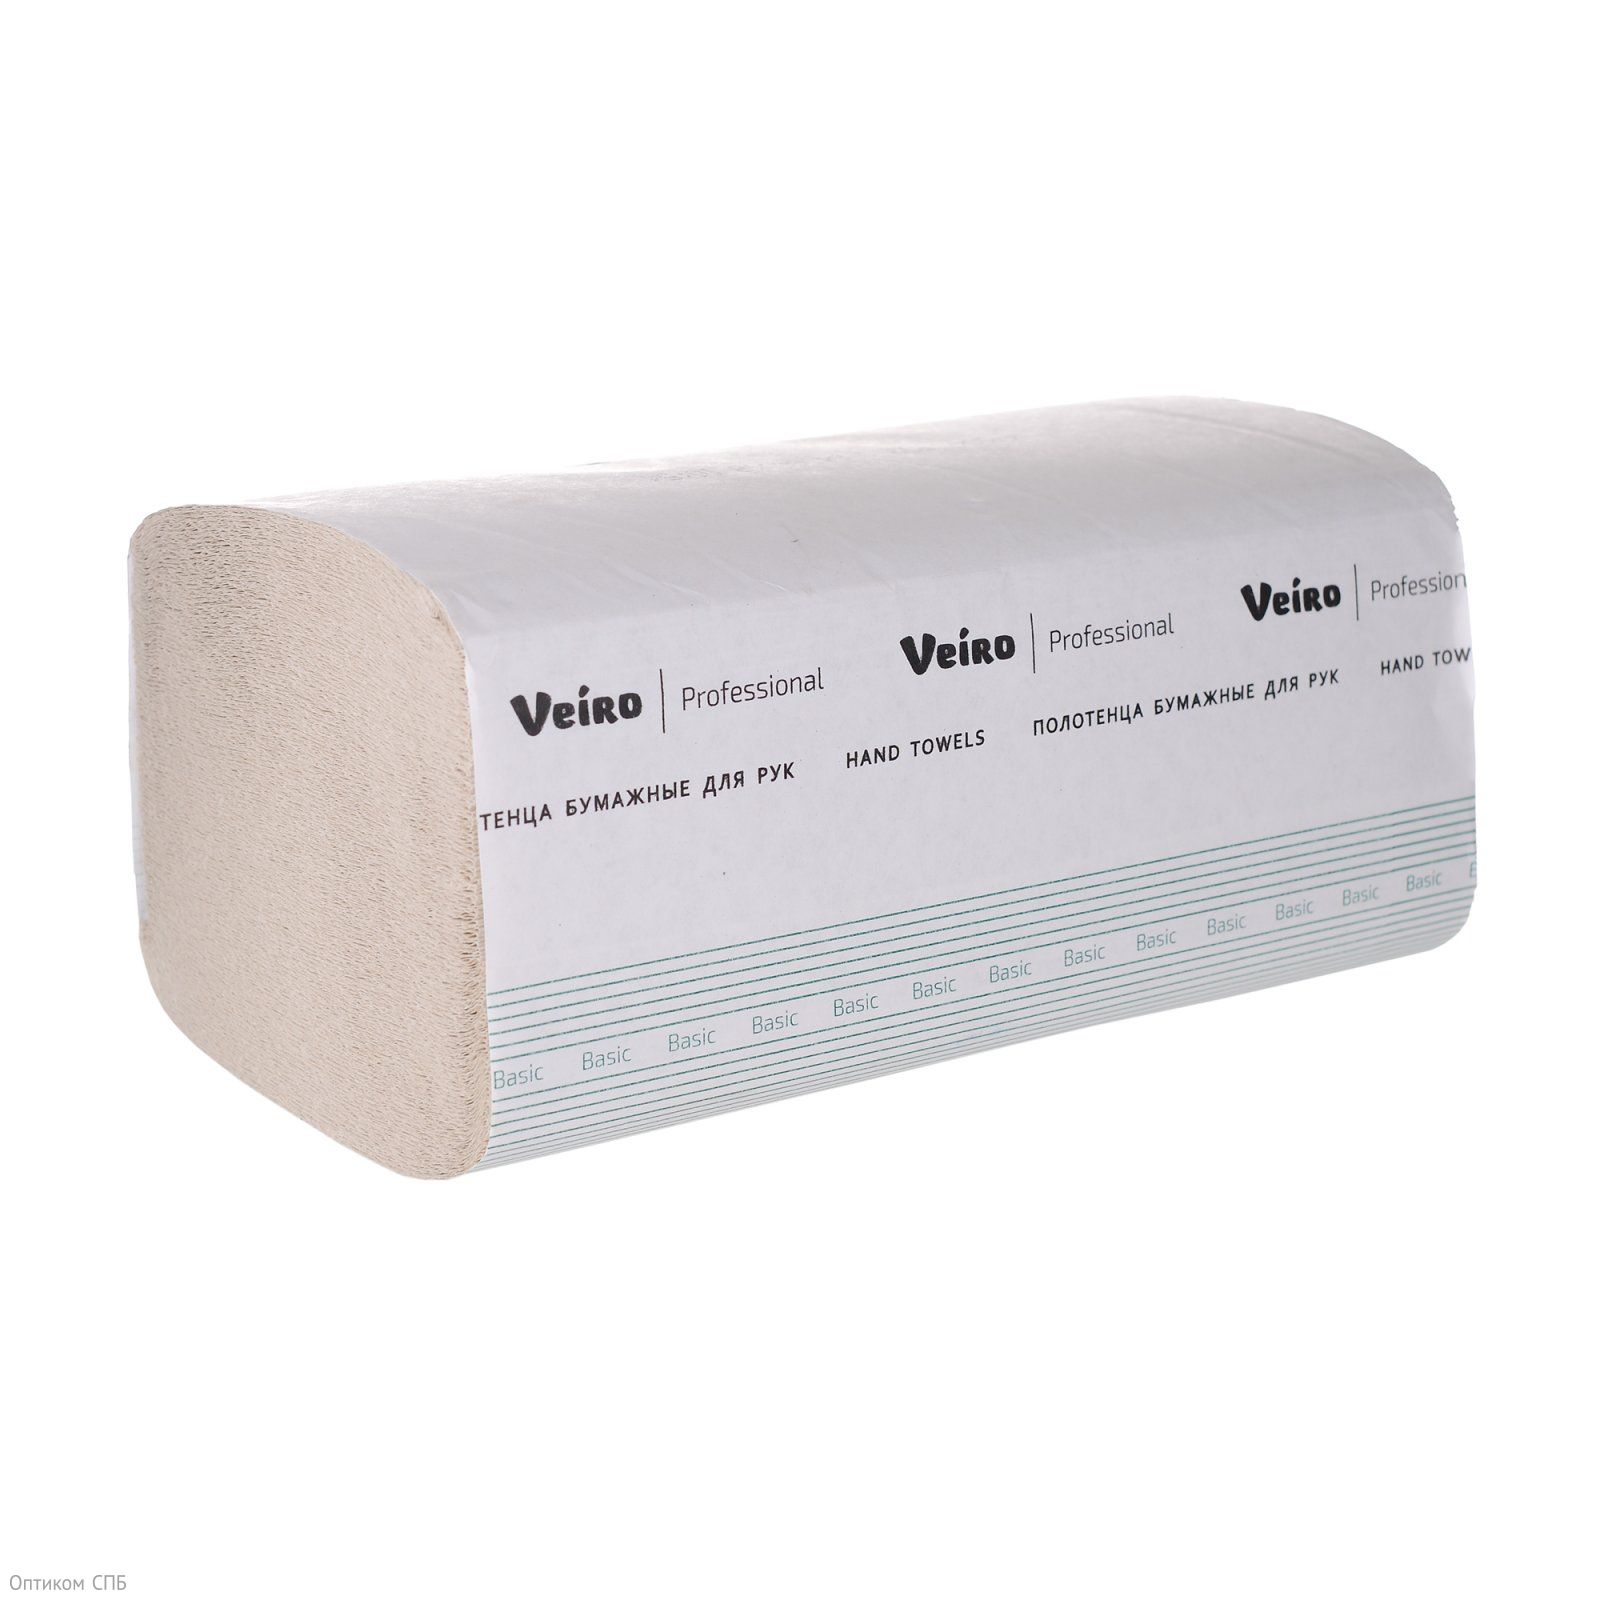 Полотенца бумажные Veiro Professional Basic (Вейро) 1-слойные, V-сложения. Полотенца стандартного качества для мест с высокой проходимостью. Обладают высокой впитывающей способностью. Эффективно высушивают руки. В пачке 250 листов, размер листа 21х21,6 см.